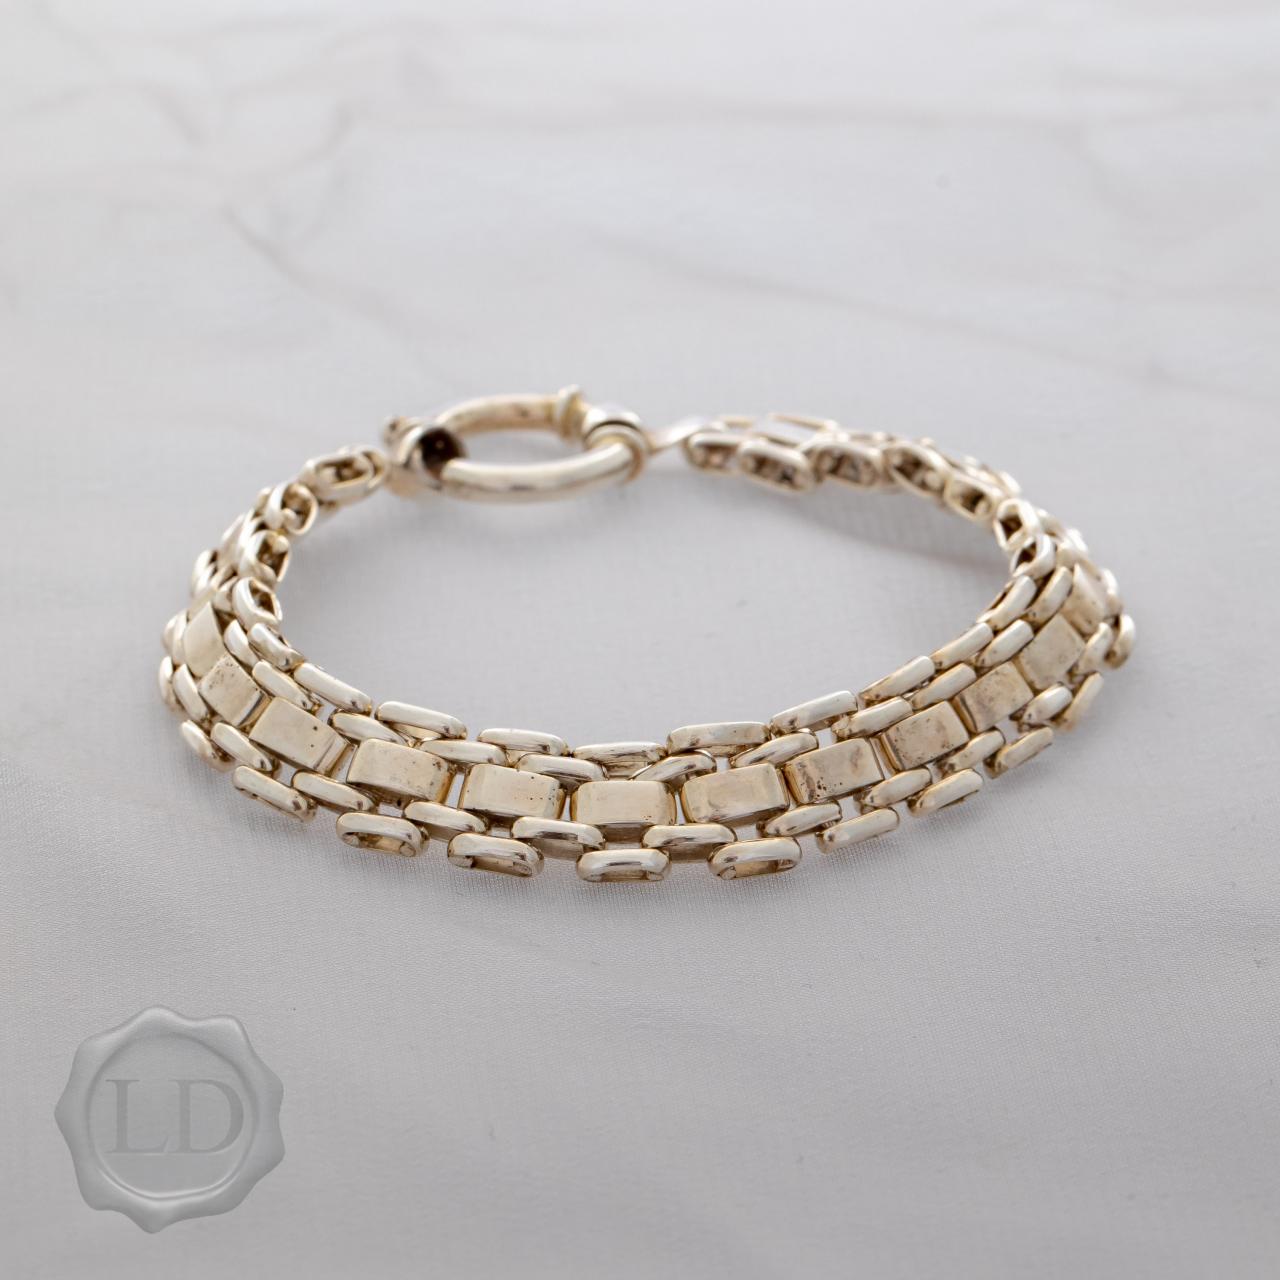 Sterling silver flat link polished bracelet